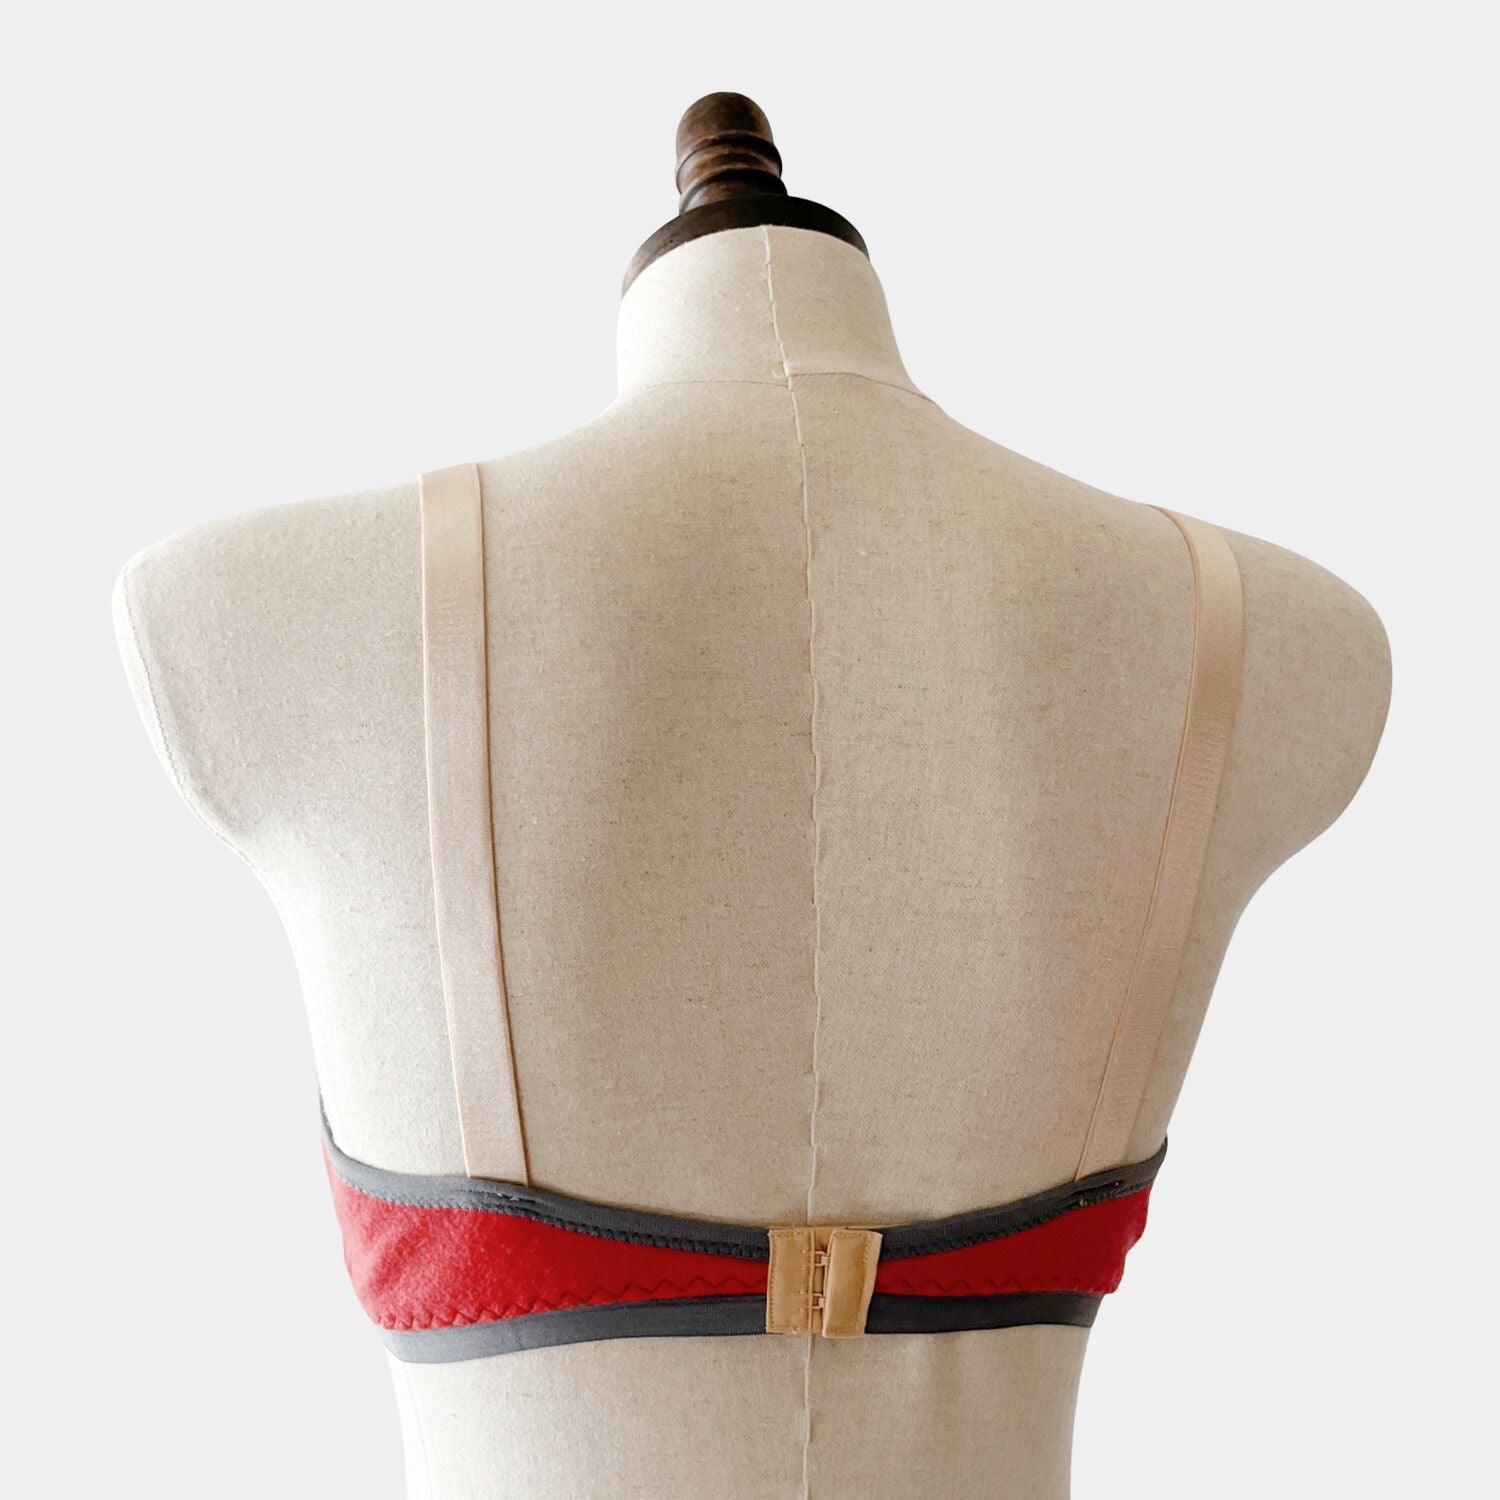 Warm Merino wool bras women's | Shop Wool bra tops underwear from Canada